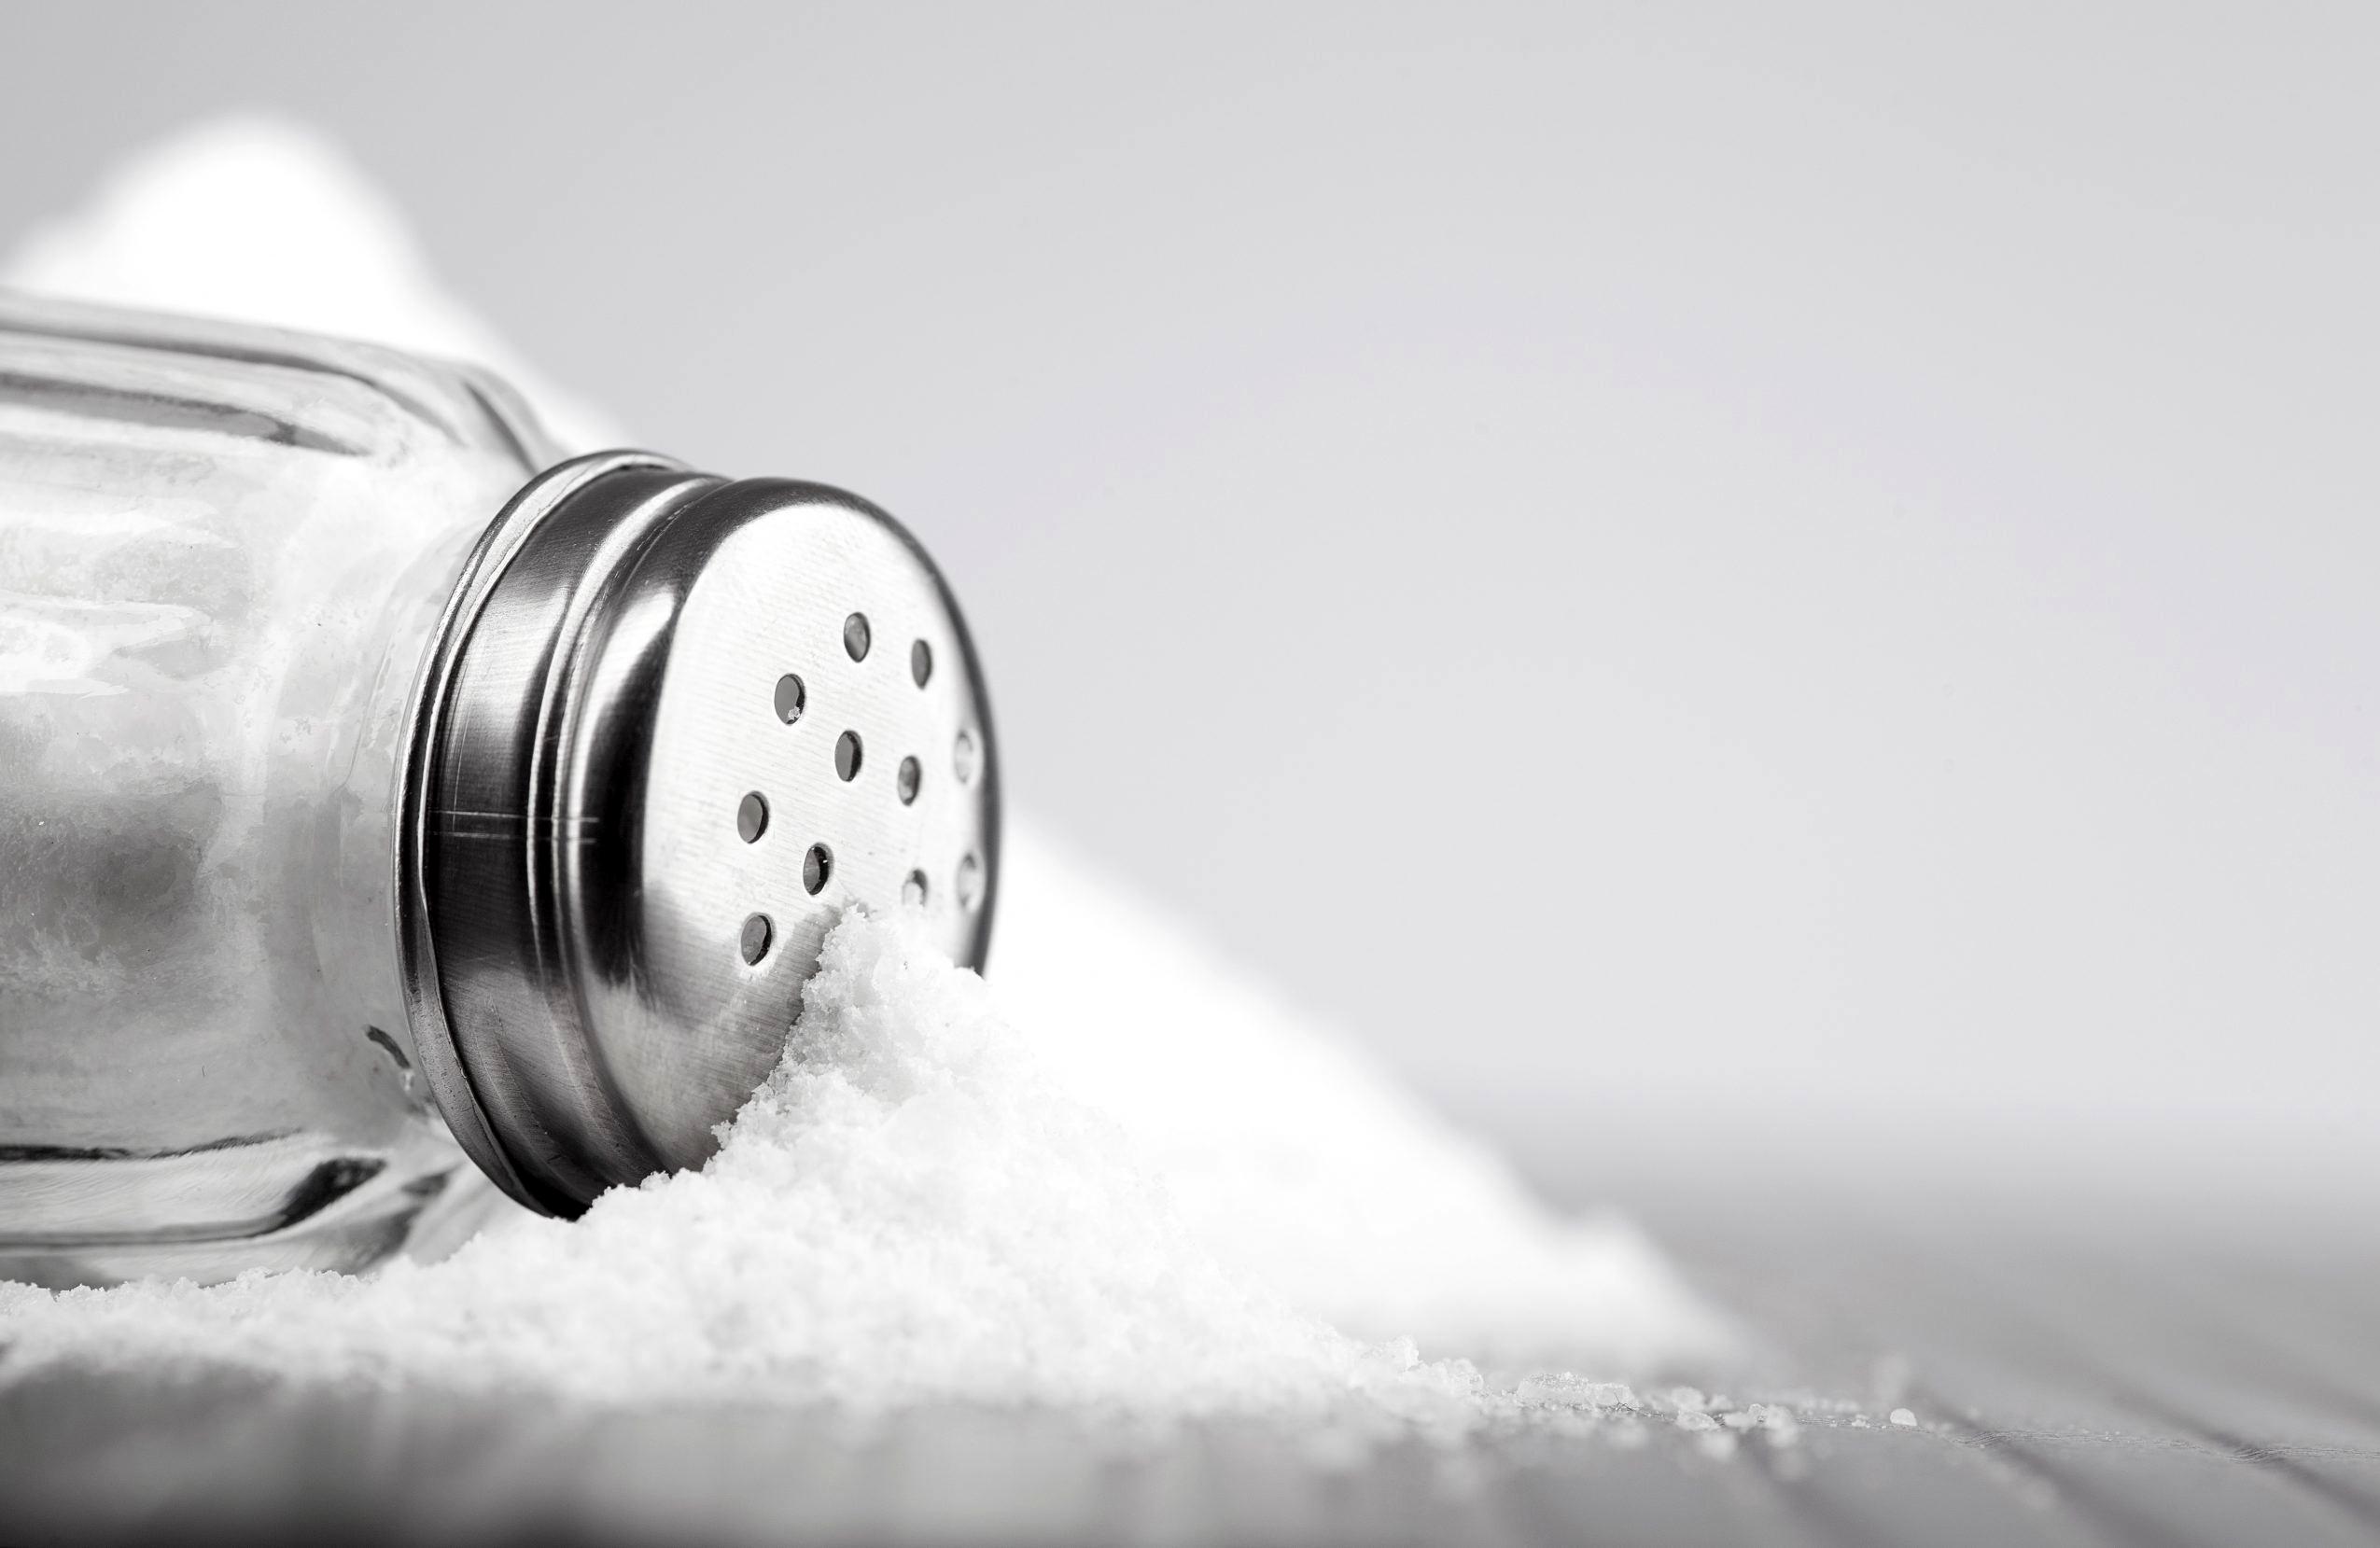 علائم مصرف زیاد نمک را بشناسید